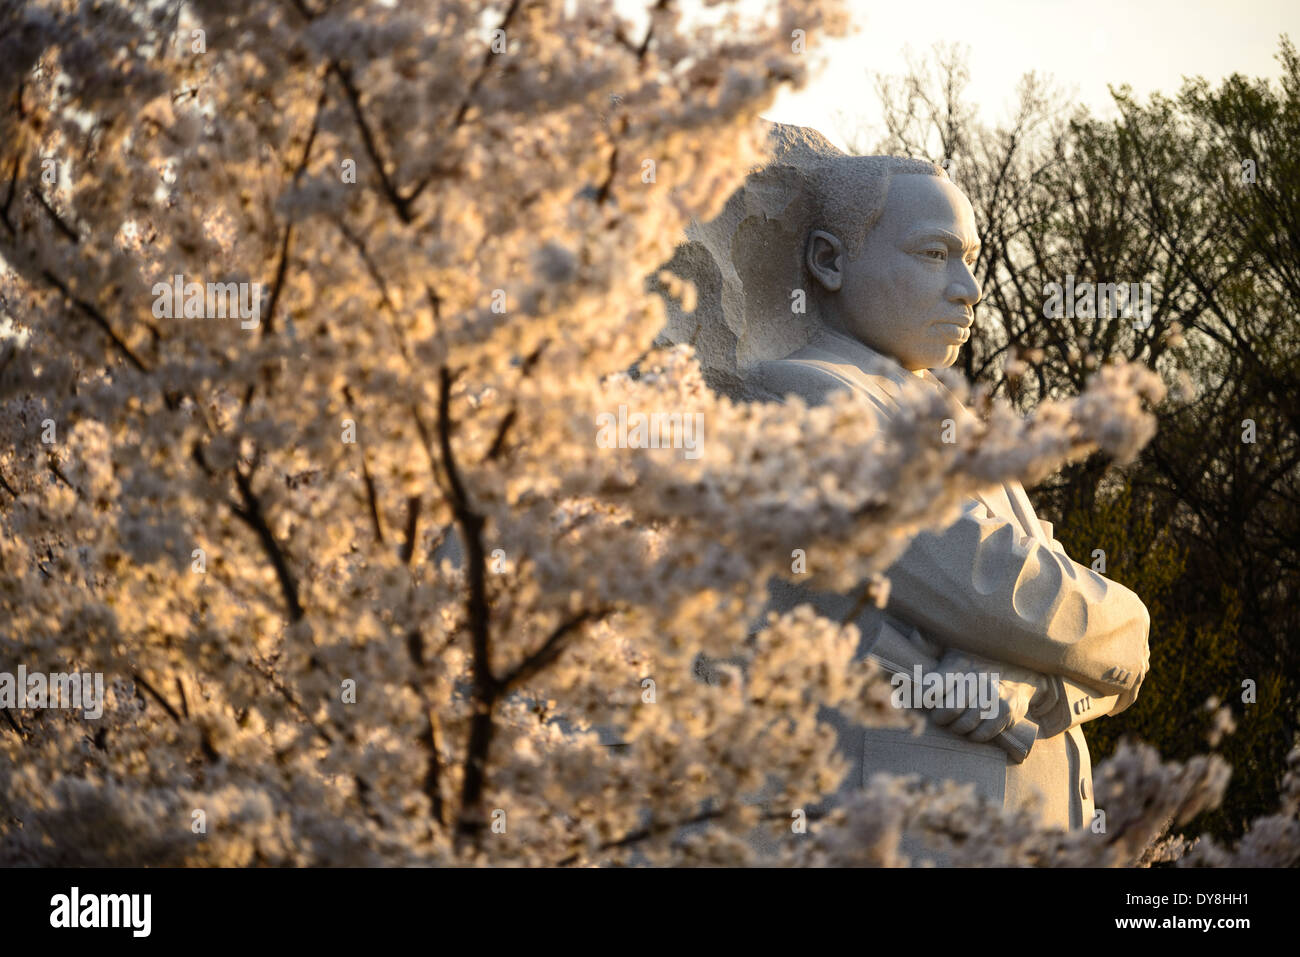 WASHINGTON DC, Stati Uniti d'America - La mattina presto sun acquisisce la fioritura dei ciliegi in fiore accanto alla statua di Martin Luther King Jr Memorial sul bacino di marea a Washington DC. Foto Stock